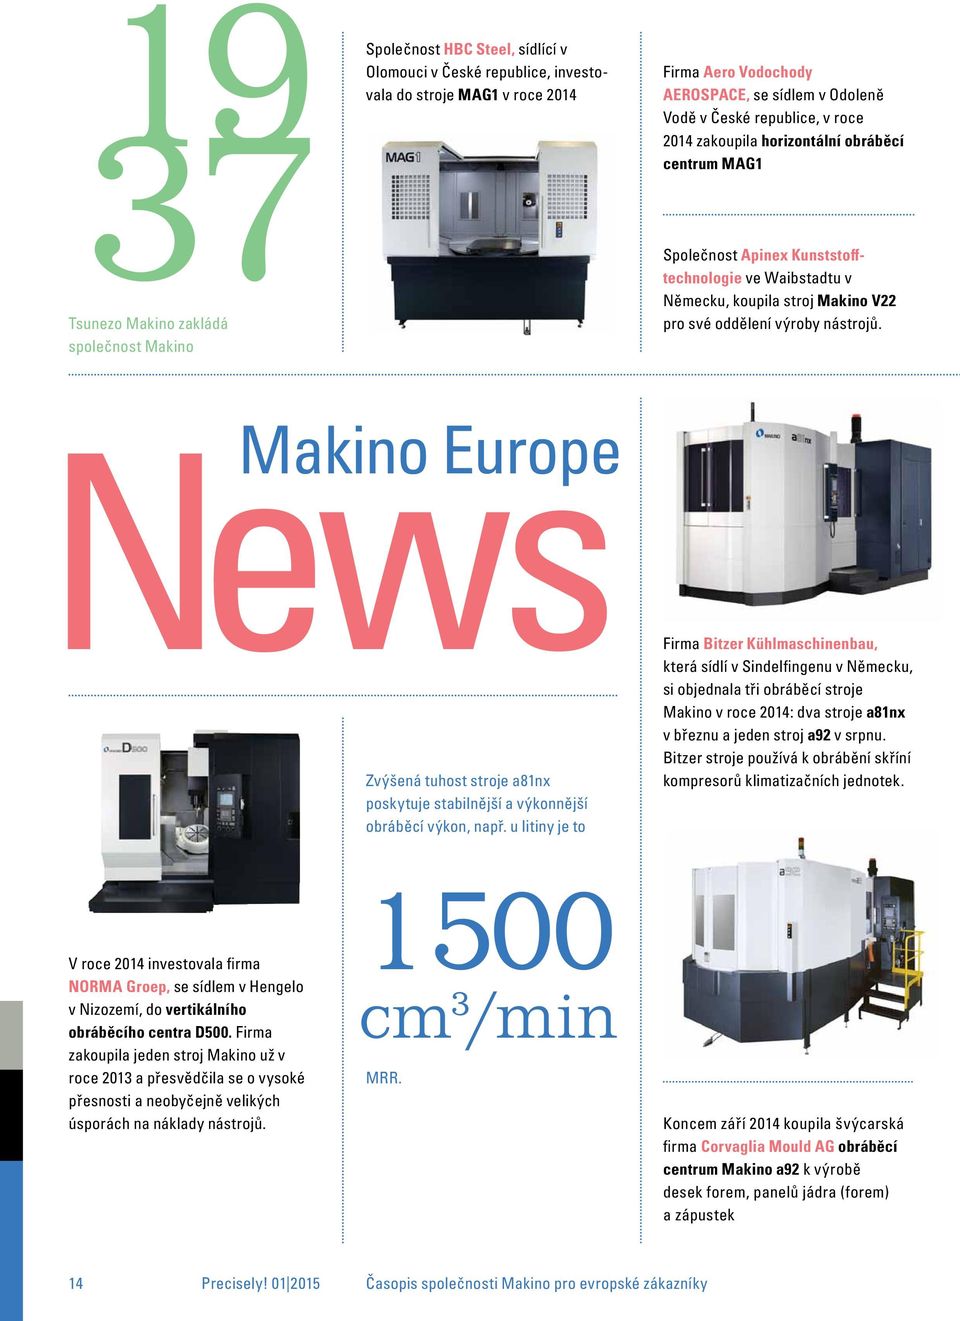 nástrojů. News Makino europe Zvýšená tuhost stroje a81nx poskytuje stabilnější a výkonnější obráběcí výkon, např.